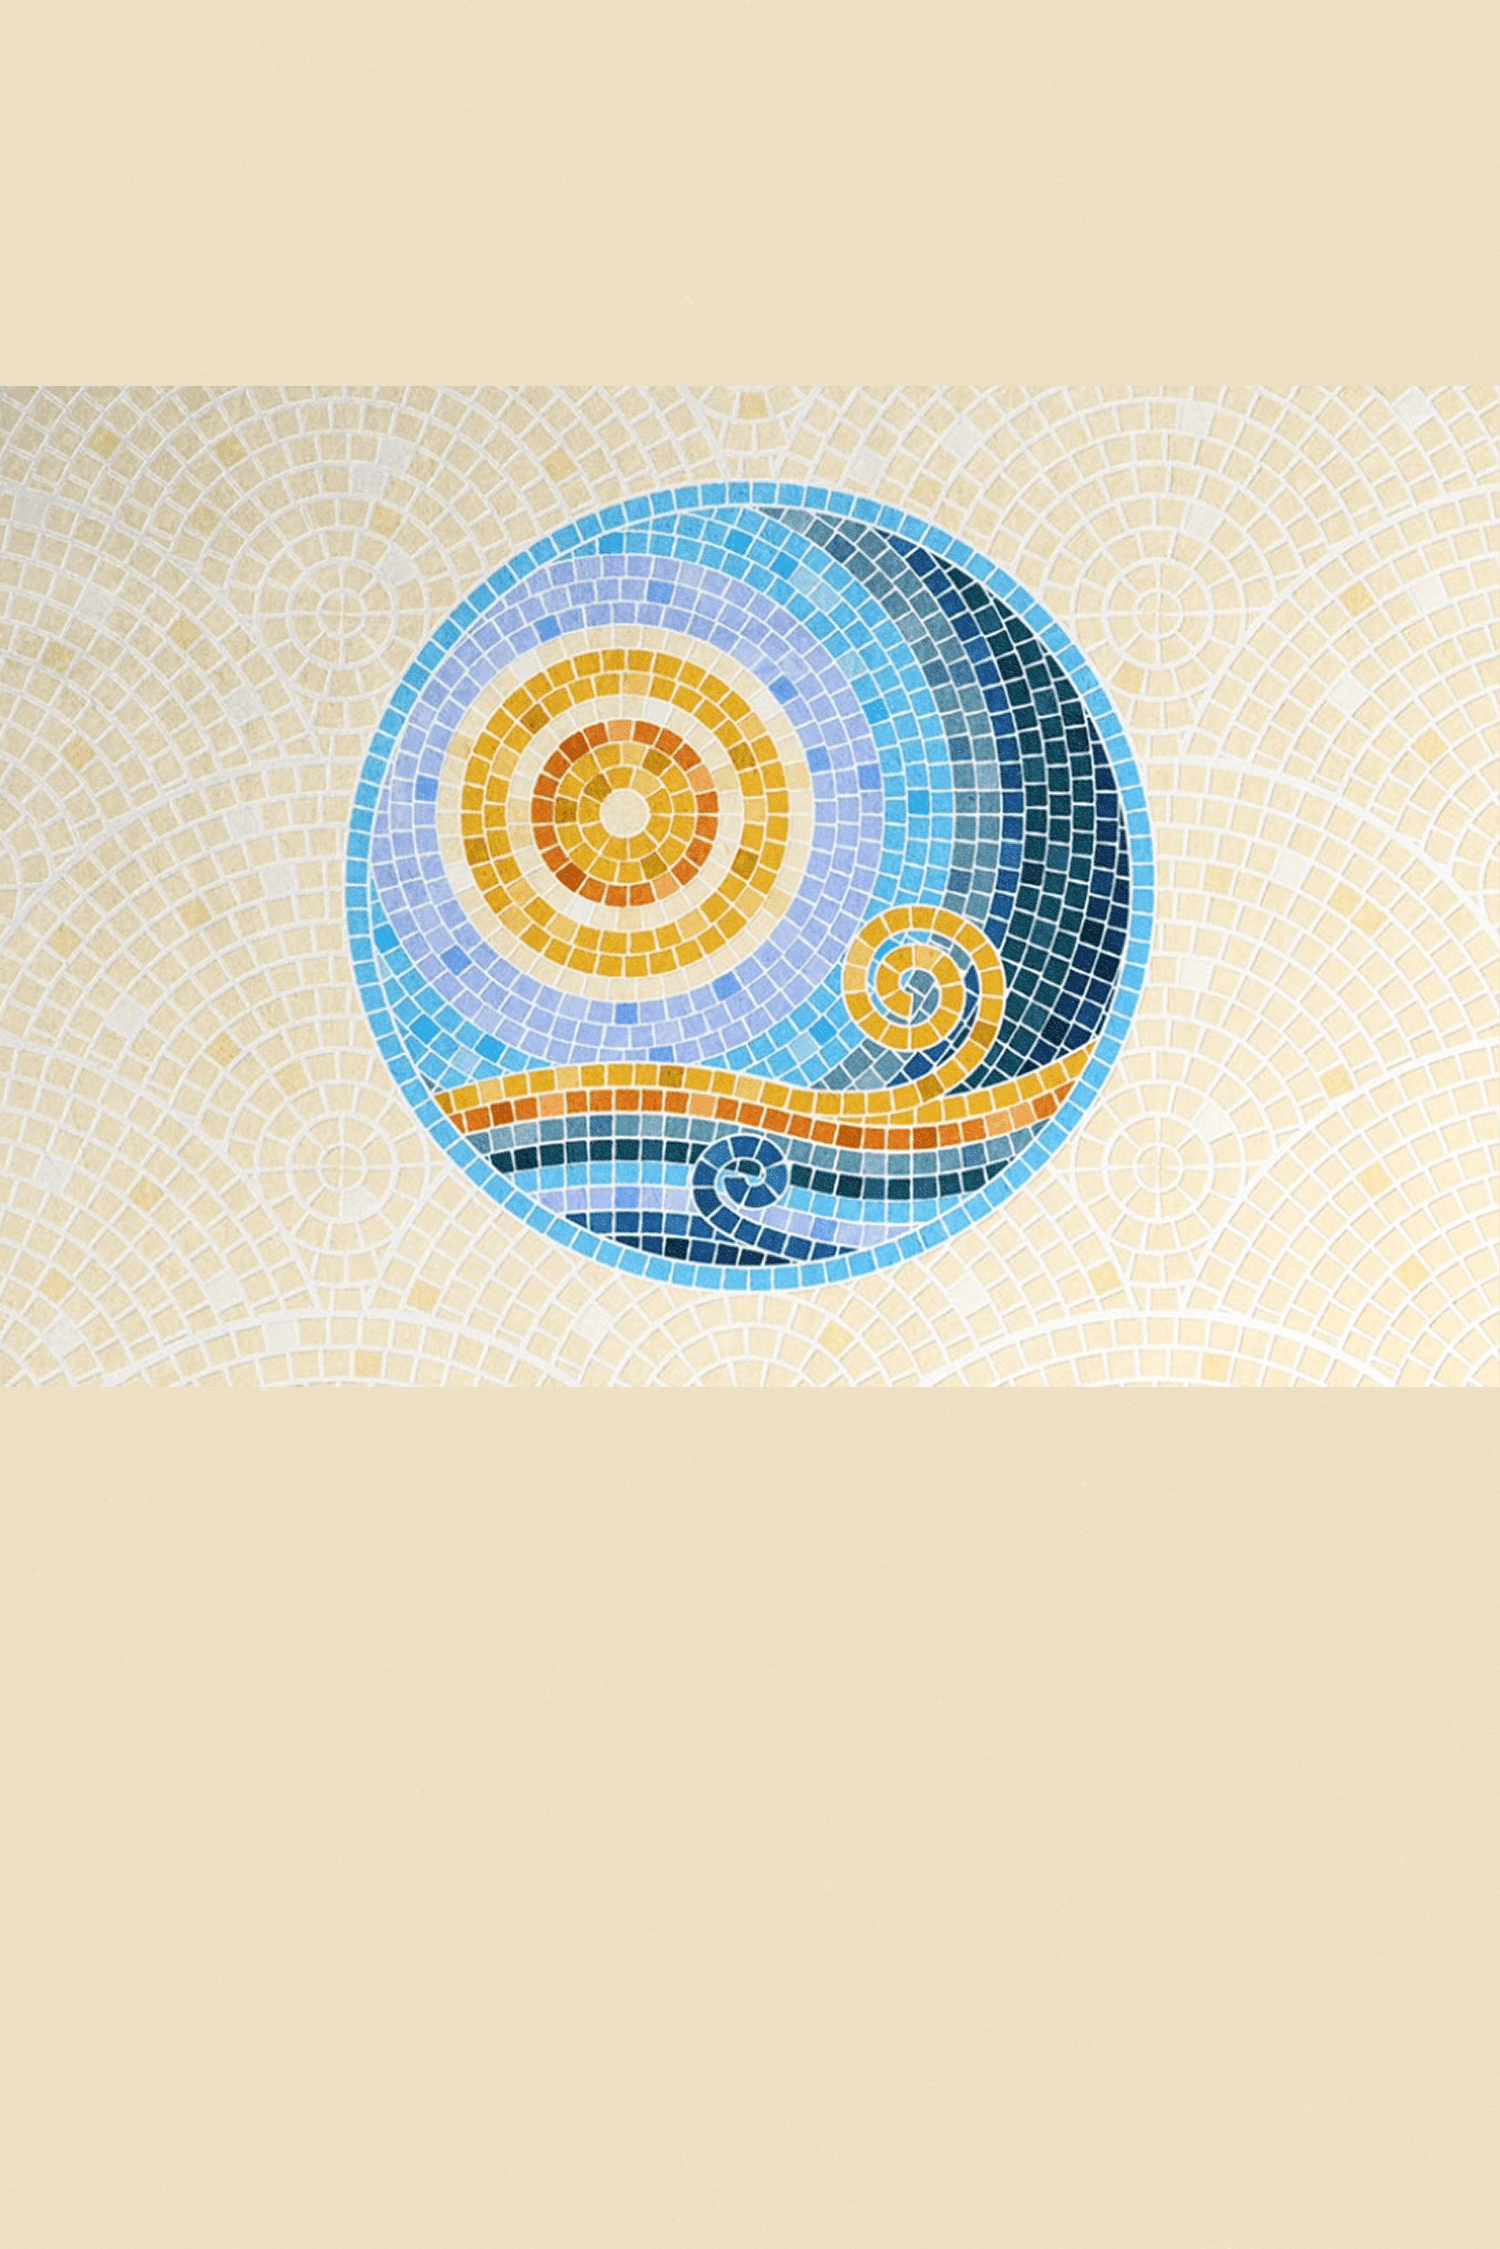 Mosaikfliesenpinsel von PixelBuddha